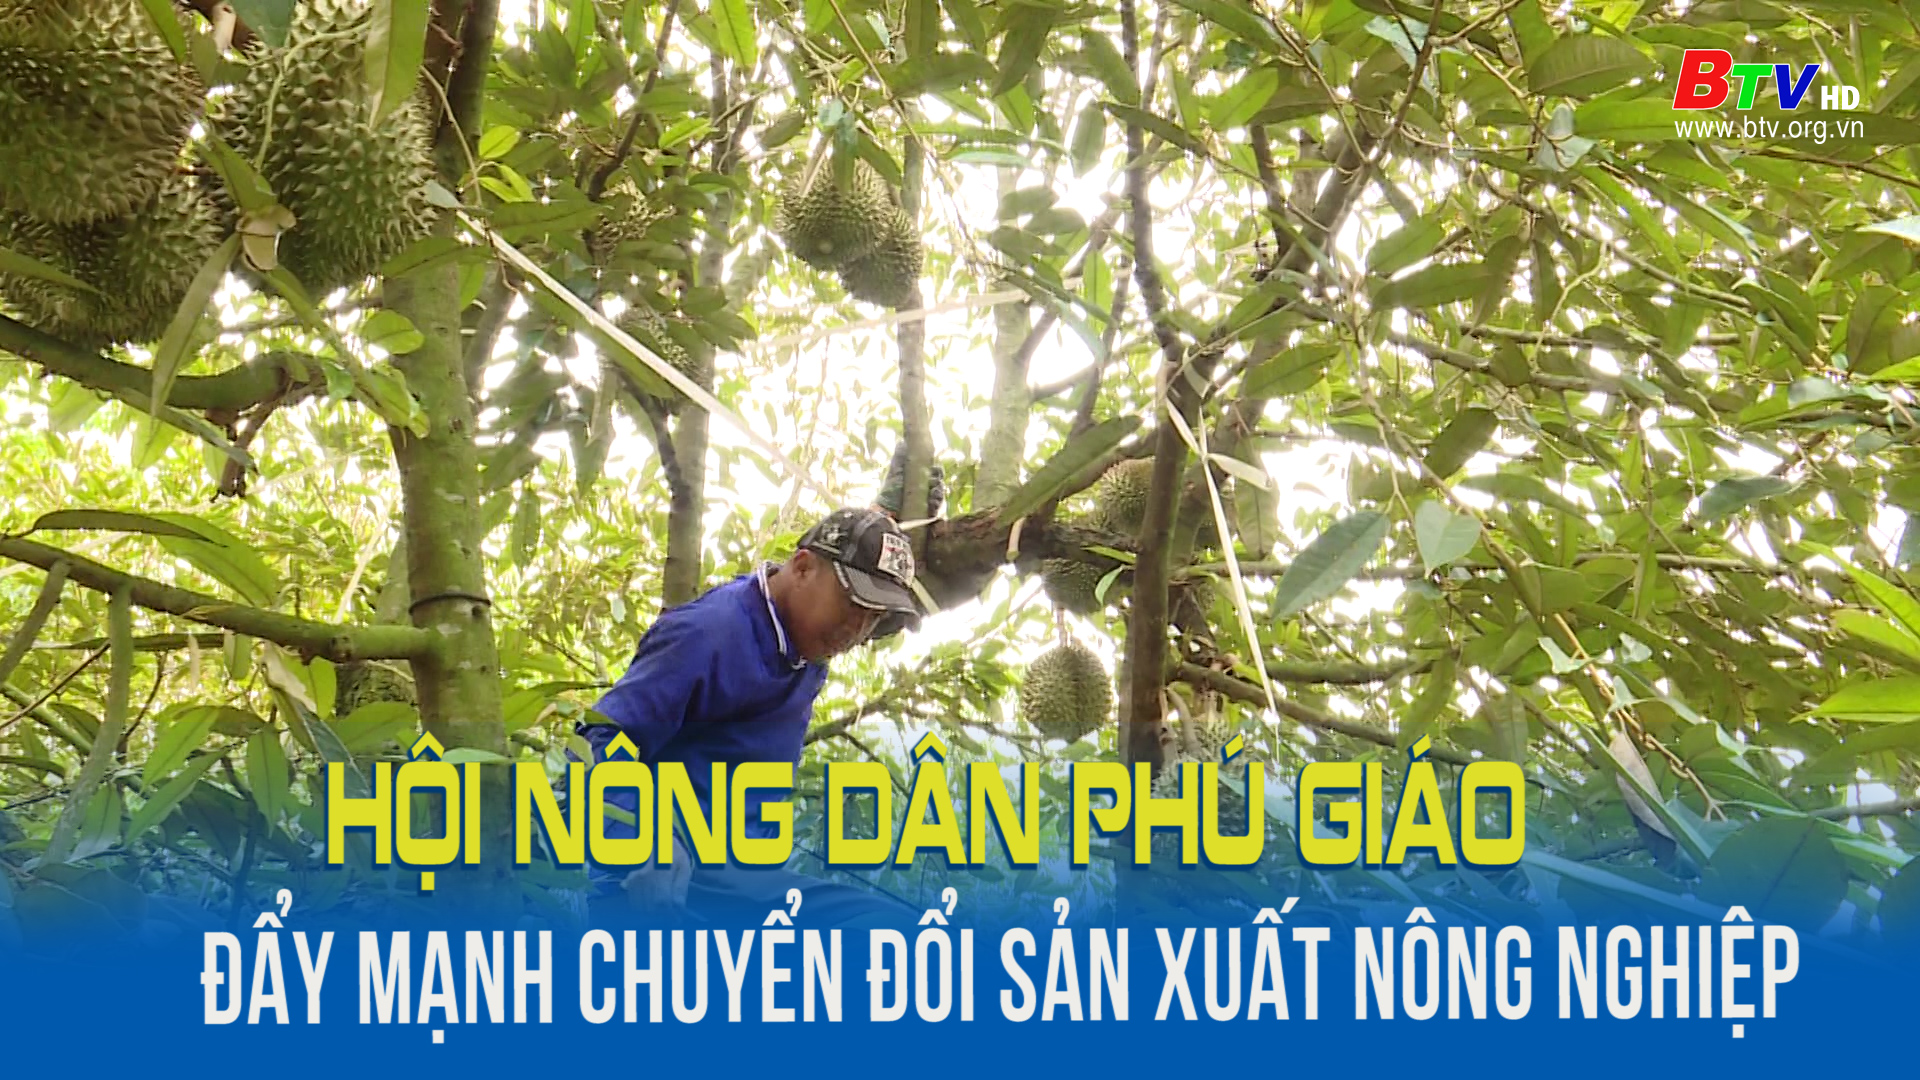 Hội nông dân Phú Giáo đẩy mạnh chuyển đổi sản xuất nông nghiệp